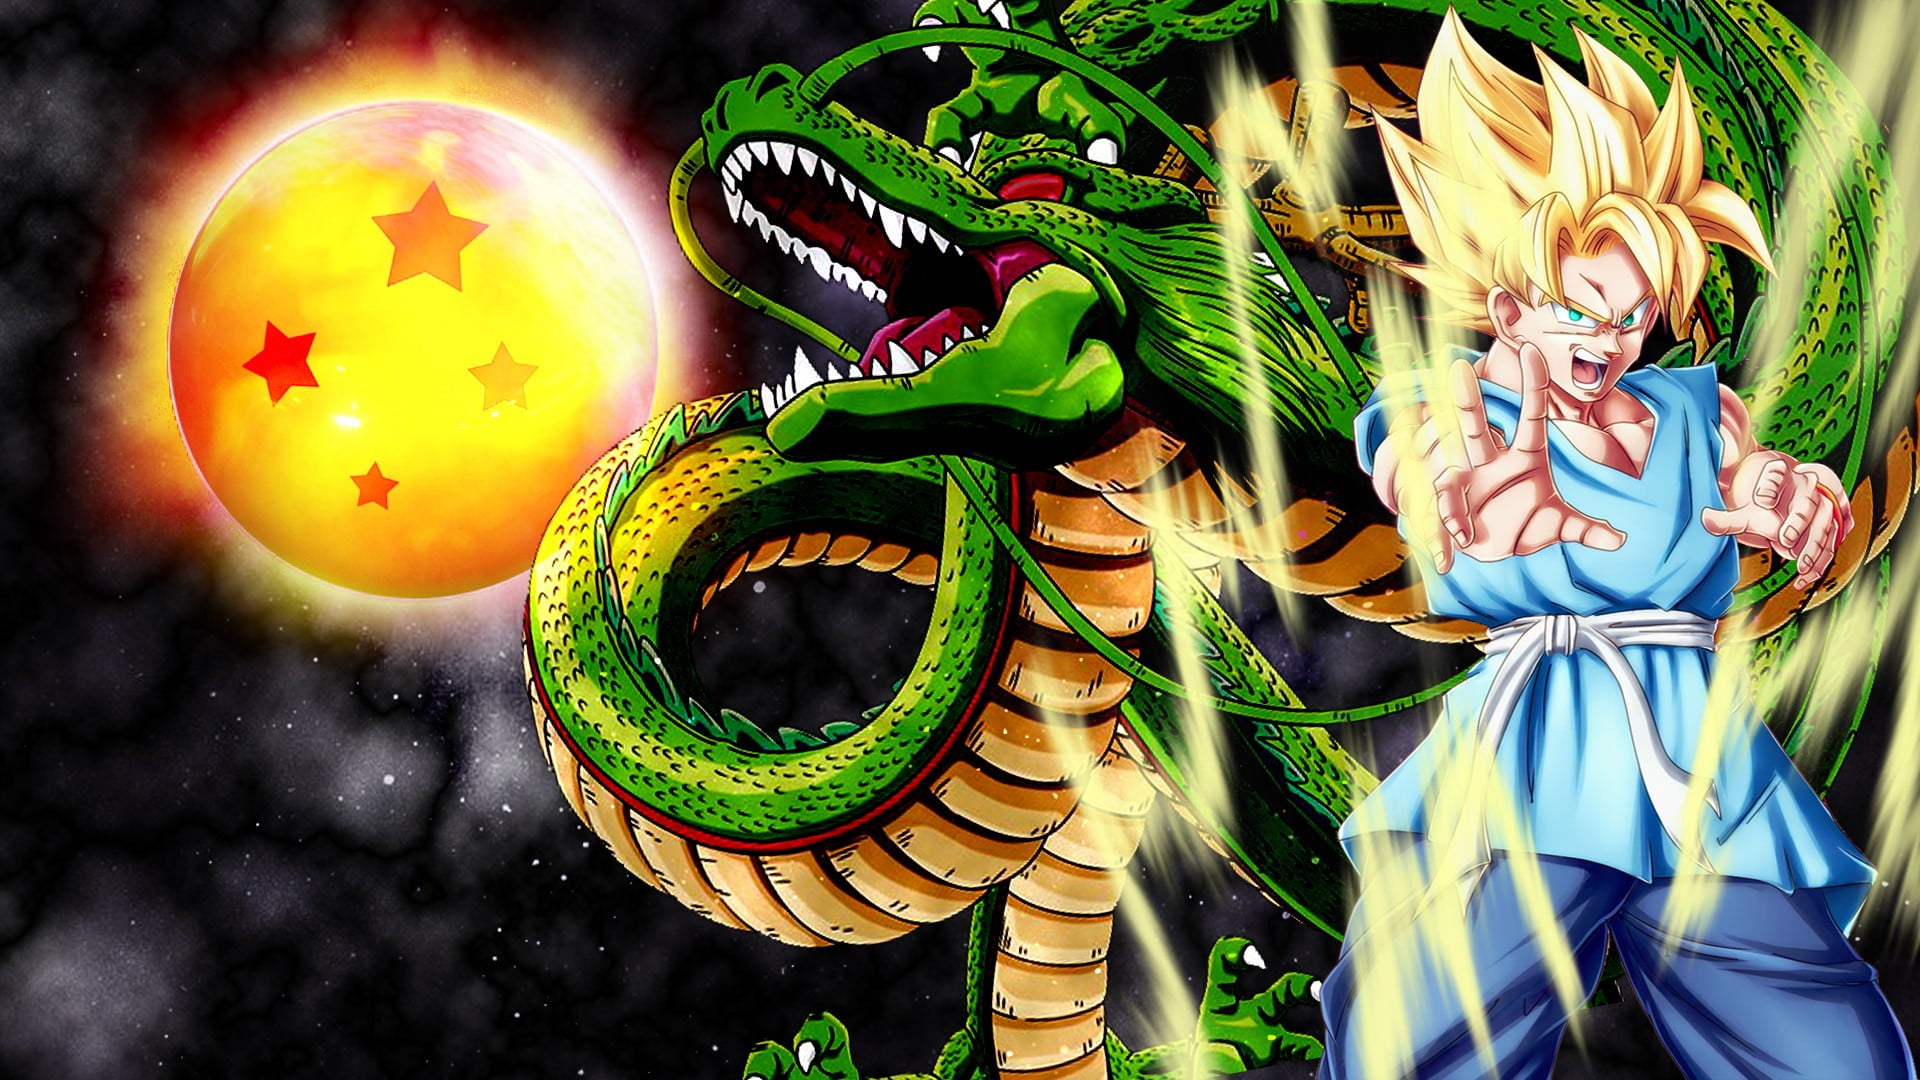 Dragonball Z Super Saiyan Son Goku wallpaper, Dragon Ball, Son Goku ...